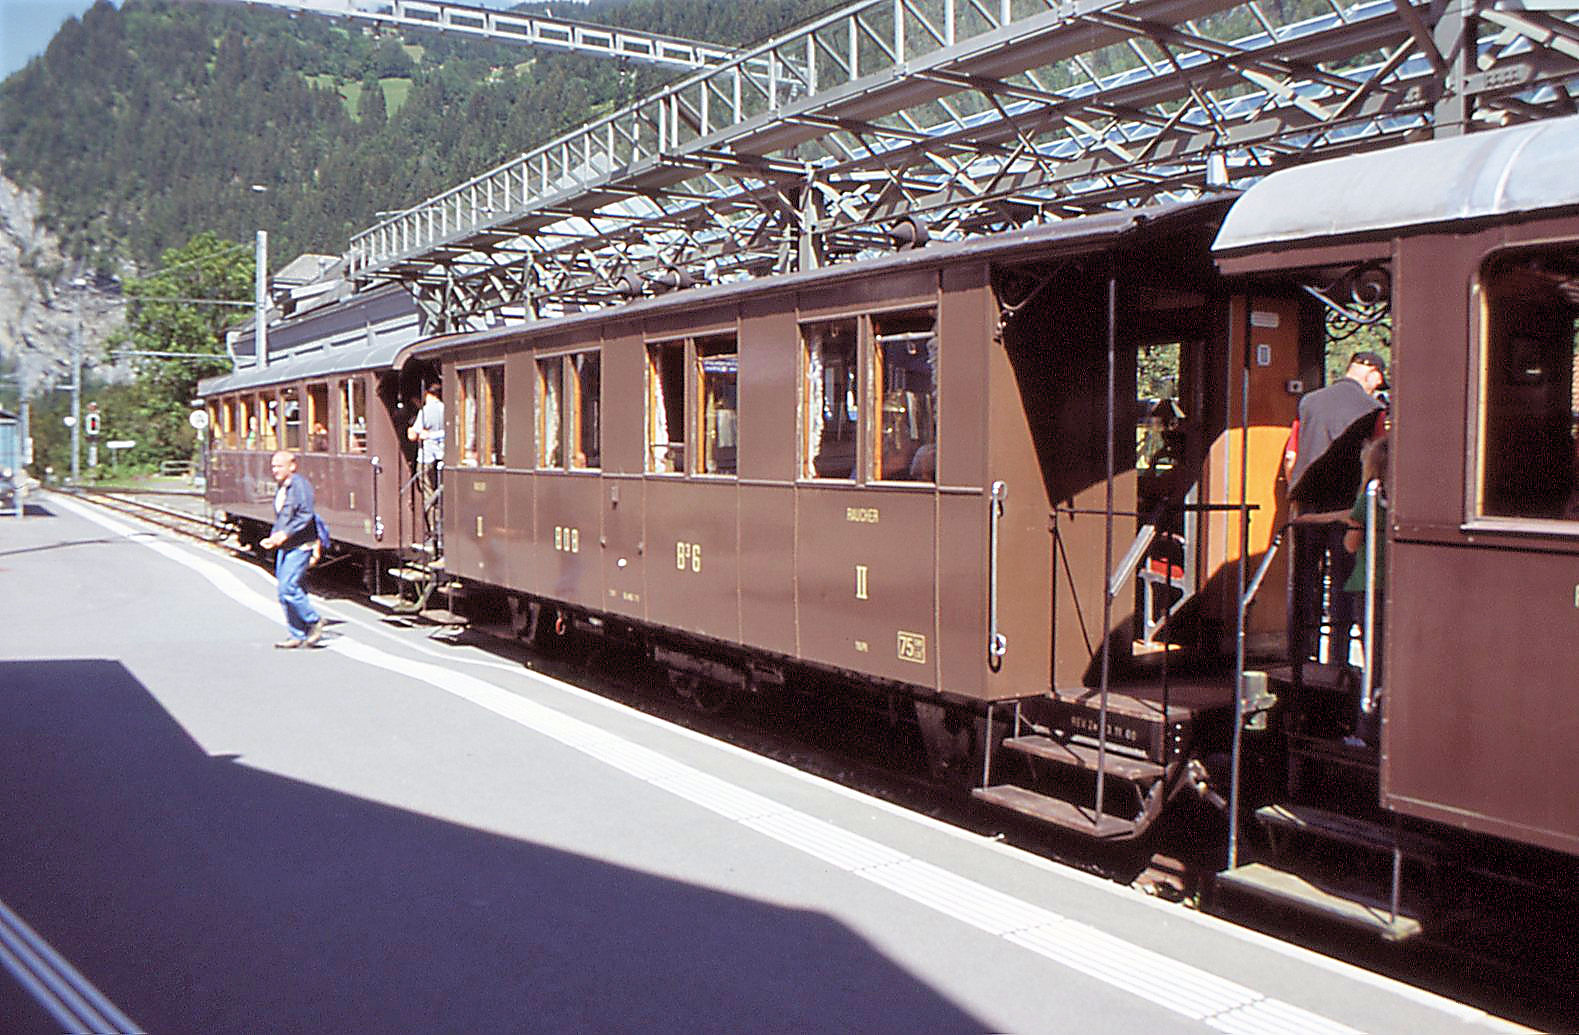 Und hier noch ein Bild des historischen Wagens B3 6 von 1901, als er noch im historischen Zug der BOB eingereiht war. Sein dreiachsiges Untergestellt erhielt er vom abgebrochenen Gepäckwagen F3 50. Lauterbrunnen, 1.September 2007   